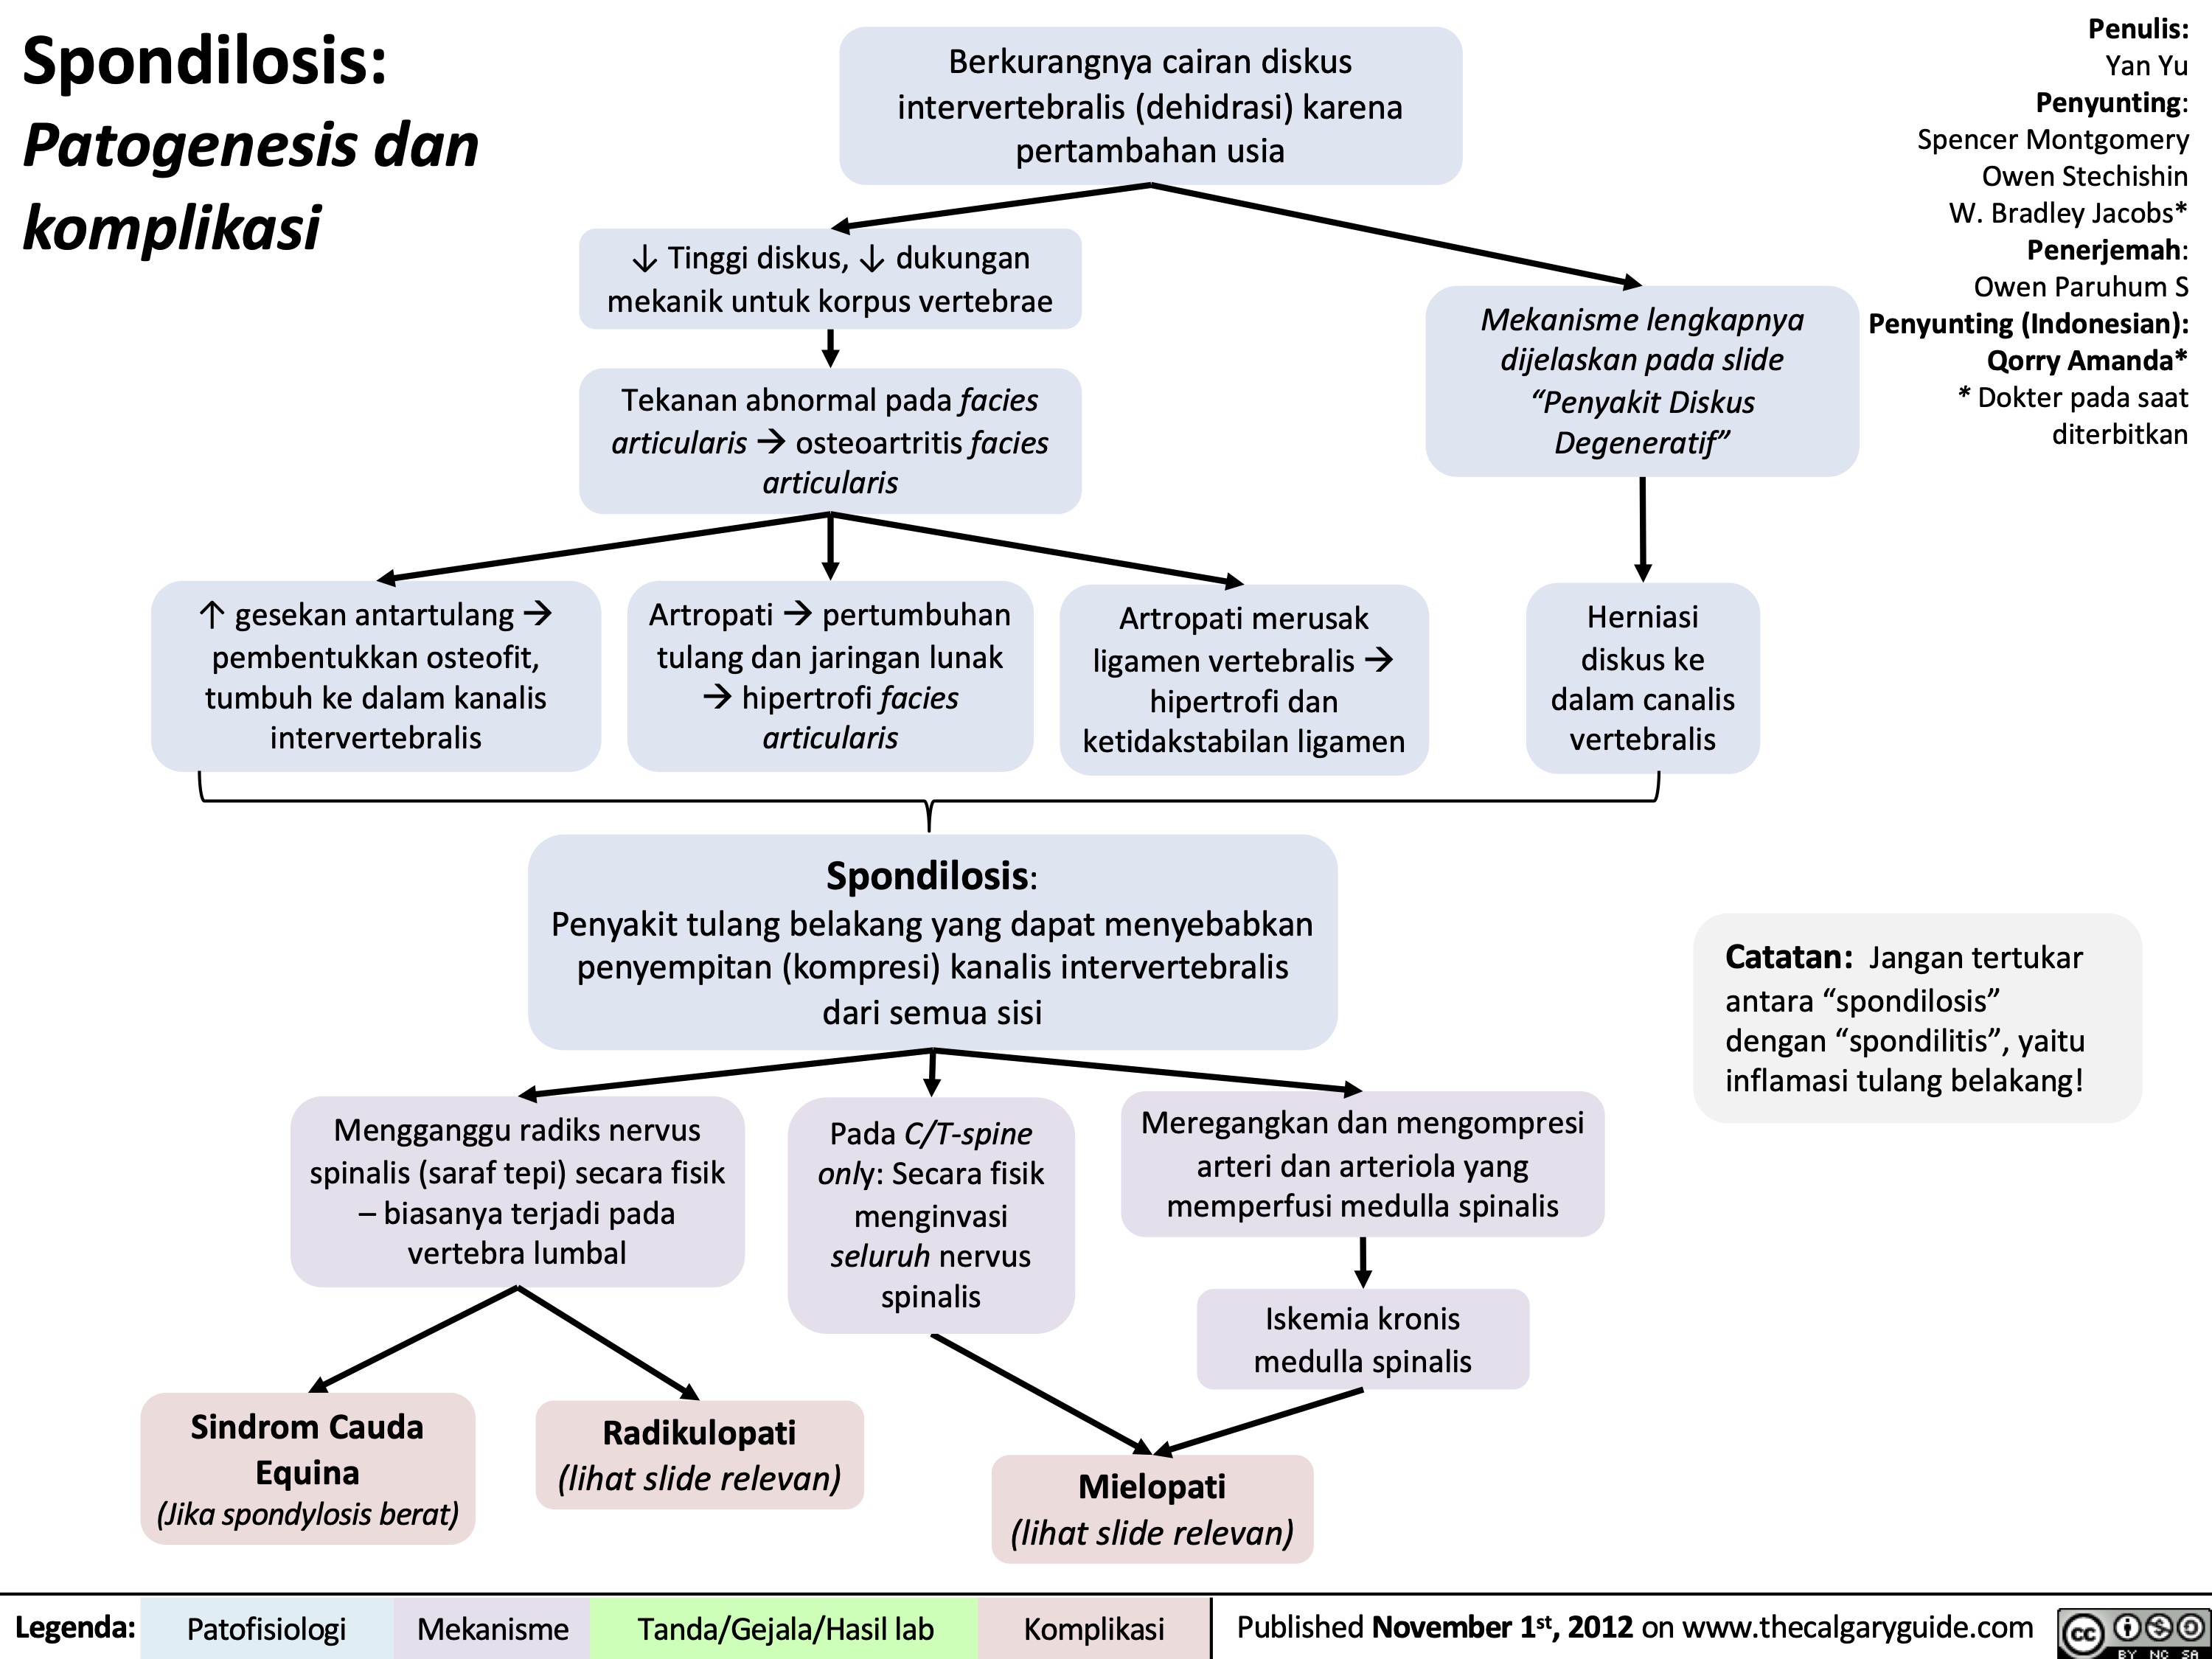 Spondilosis:
Patogenesis dan komplikasi